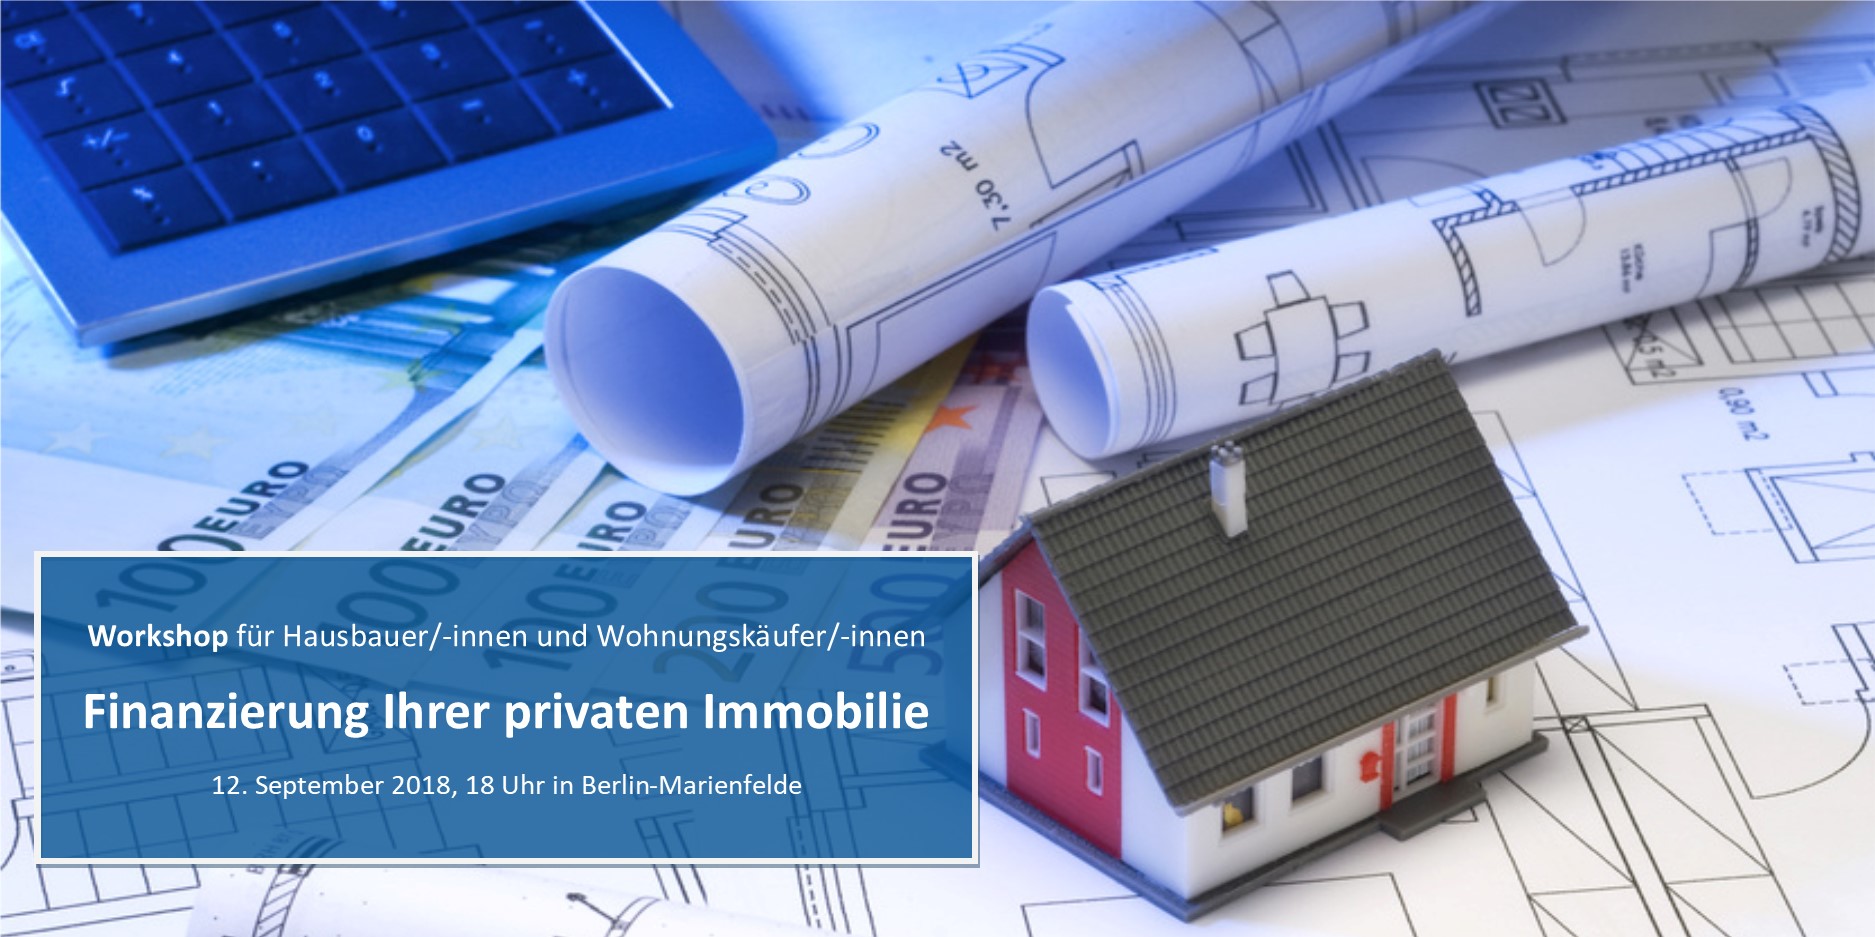 Workshop “Finanzierung Ihrer privaten Immobilie”